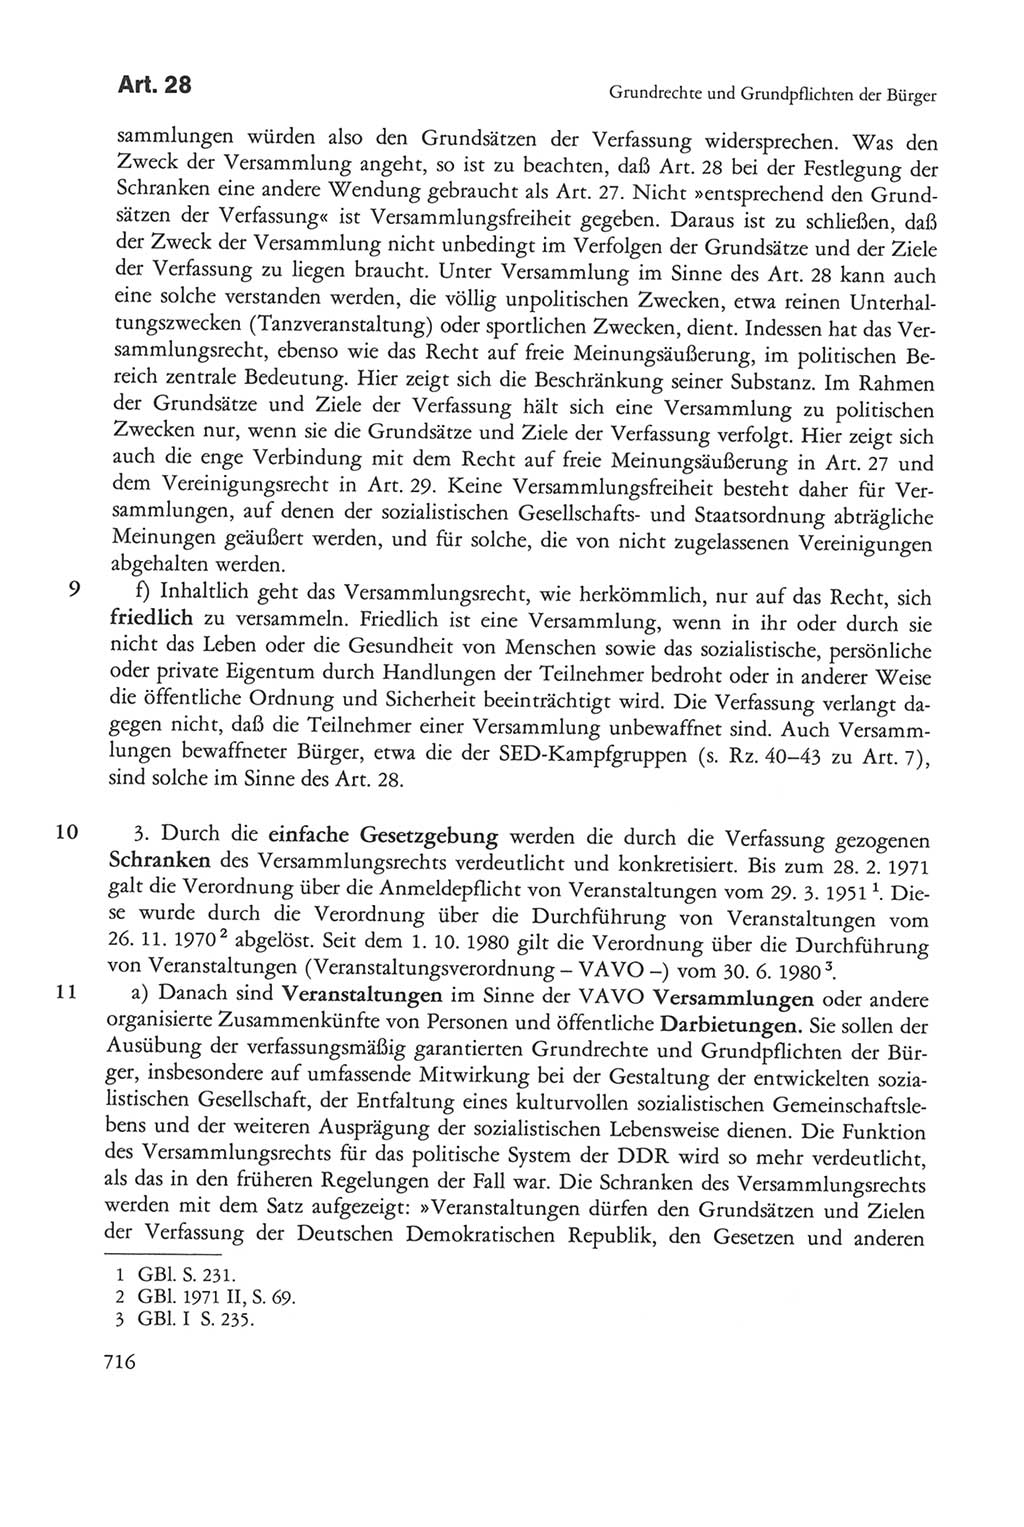 Die sozialistische Verfassung der Deutschen Demokratischen Republik (DDR), Kommentar mit einem Nachtrag 1997, Seite 716 (Soz. Verf. DDR Komm. Nachtr. 1997, S. 716)